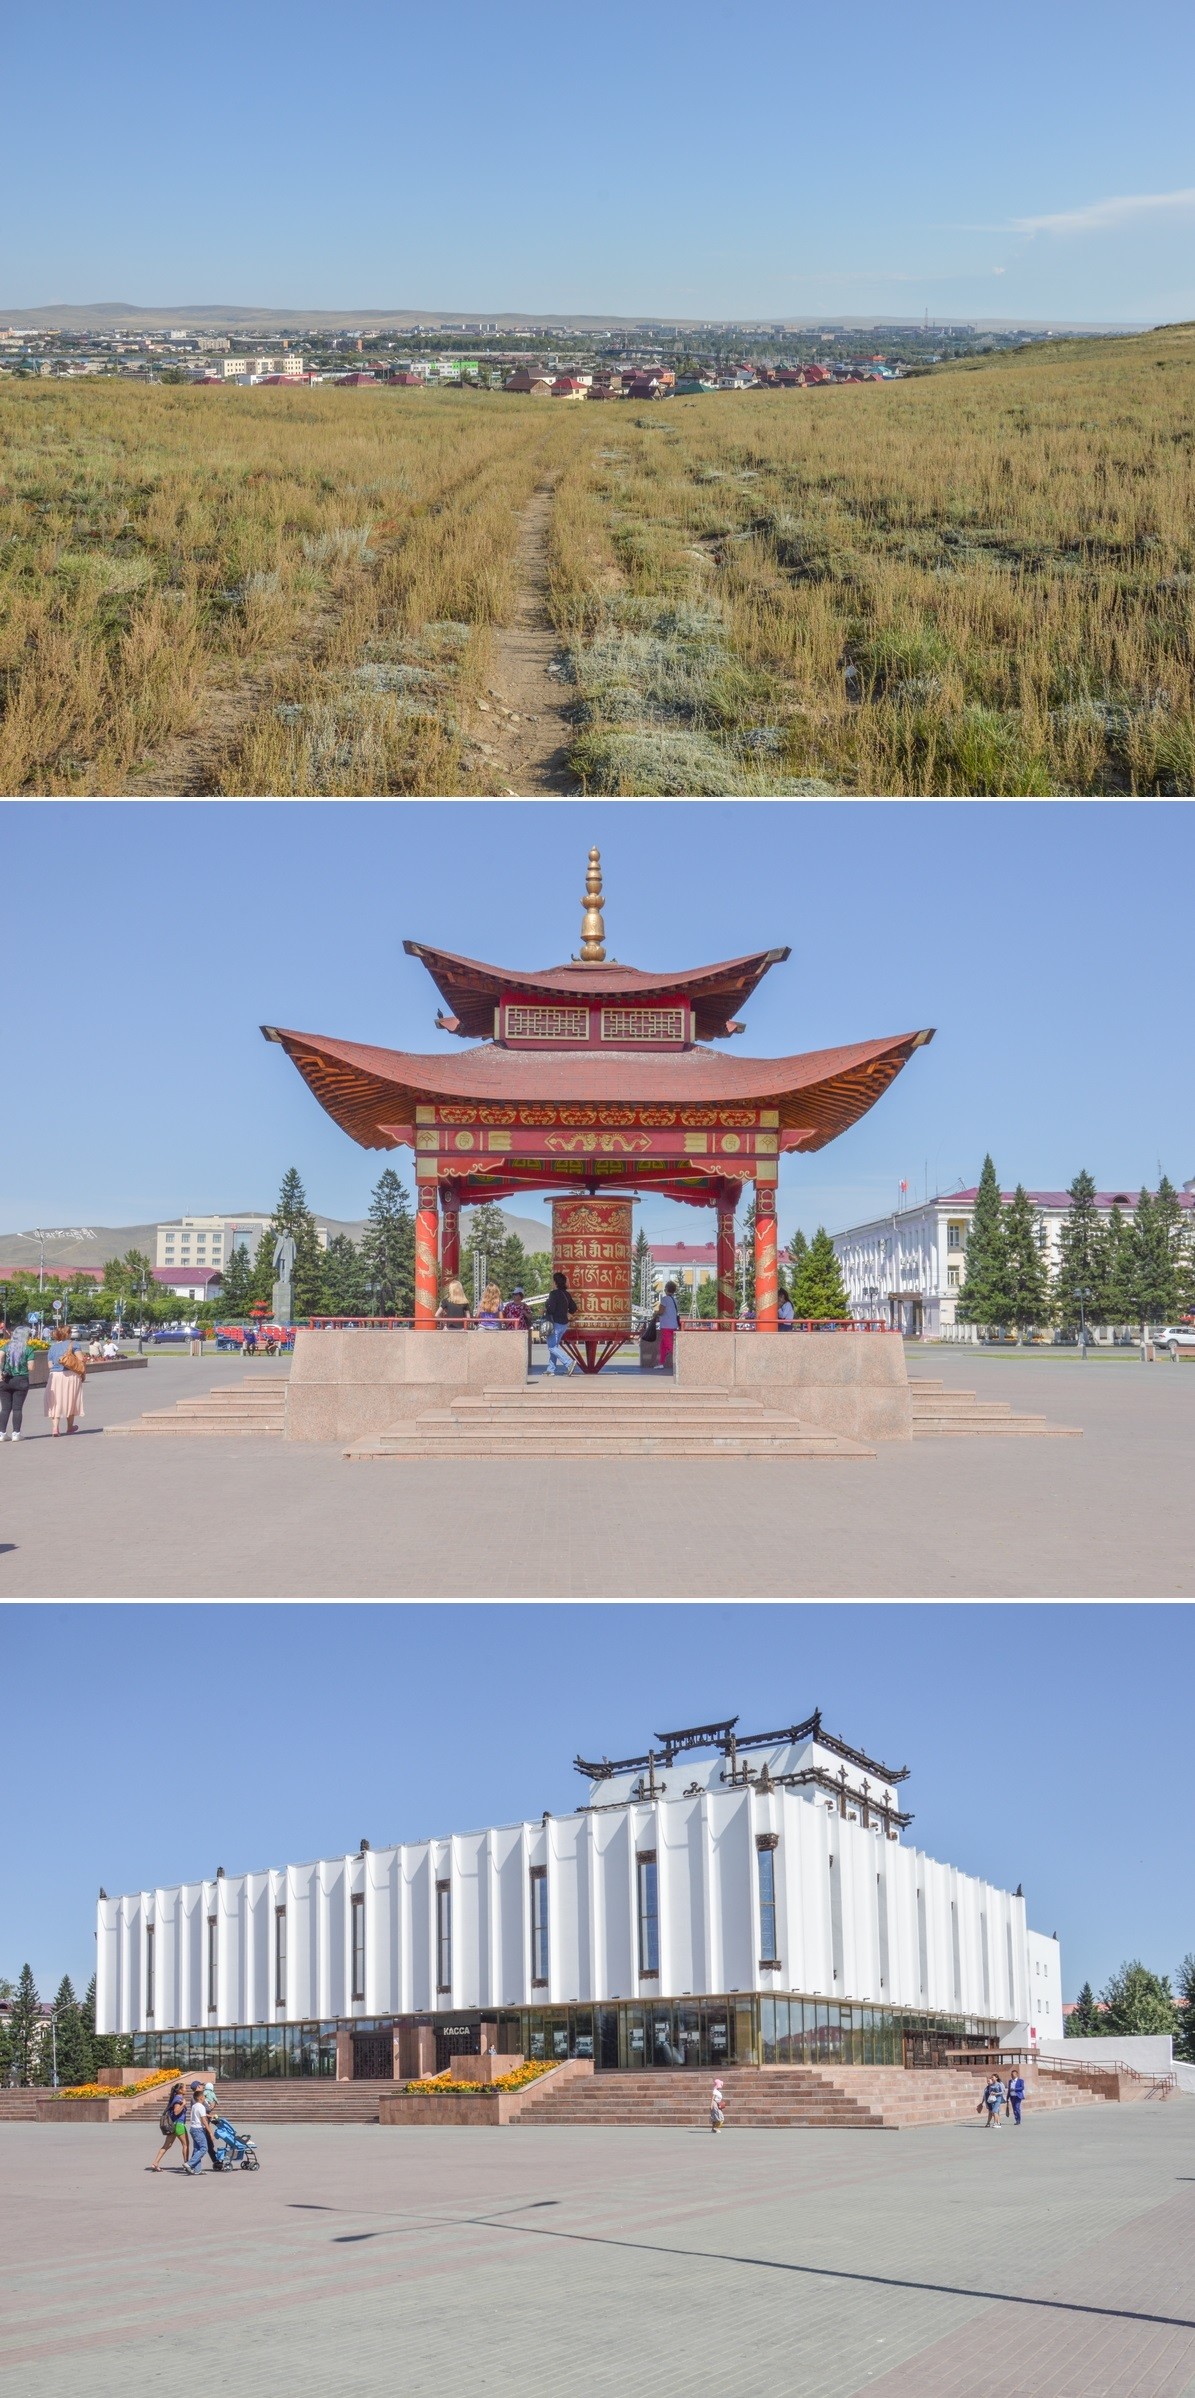 Assoiffé, mais comblé de sérénité, je regagne finalement la ville, où le départ se fait imminent. Dernier passage par la place centrale, bordée par une statue de Lénine, mais ayant en son centre un majestueux moulin à prières bouddhiste et un monumental théâtre semblant tout droit venu du Tibet.